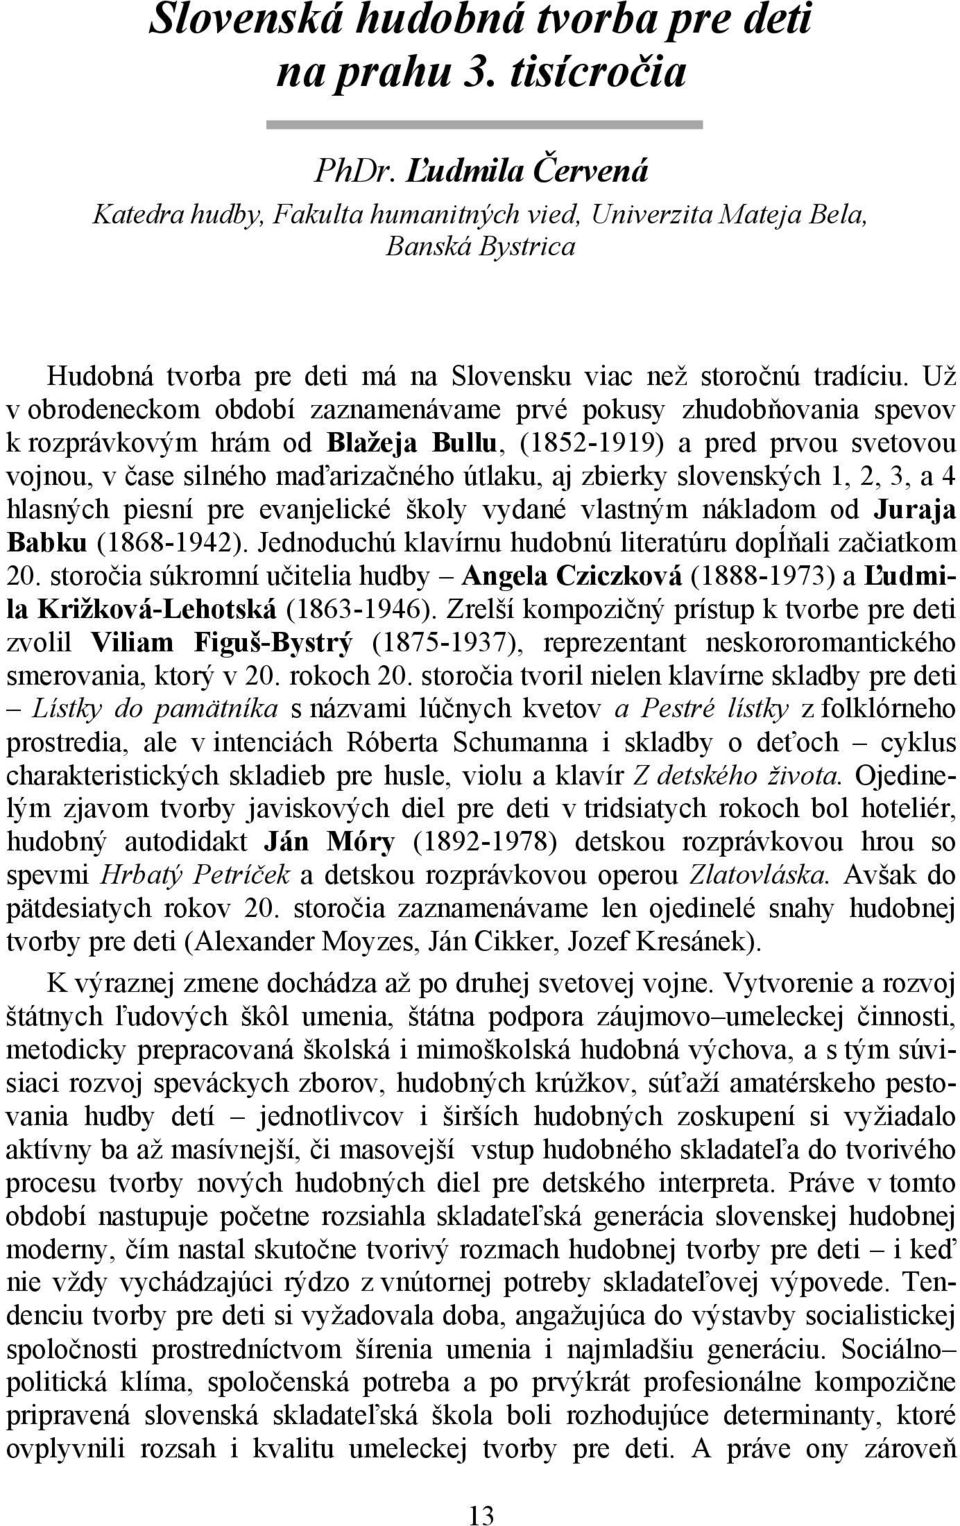 Už v obrodeneckom období zaznamenávame prvé pokusy zhudobňovania spevov k rozprávkovým hrám od Blažeja Bullu, (1852-1919) a pred prvou svetovou vojnou, v čase silného maďarizačného útlaku, aj zbierky